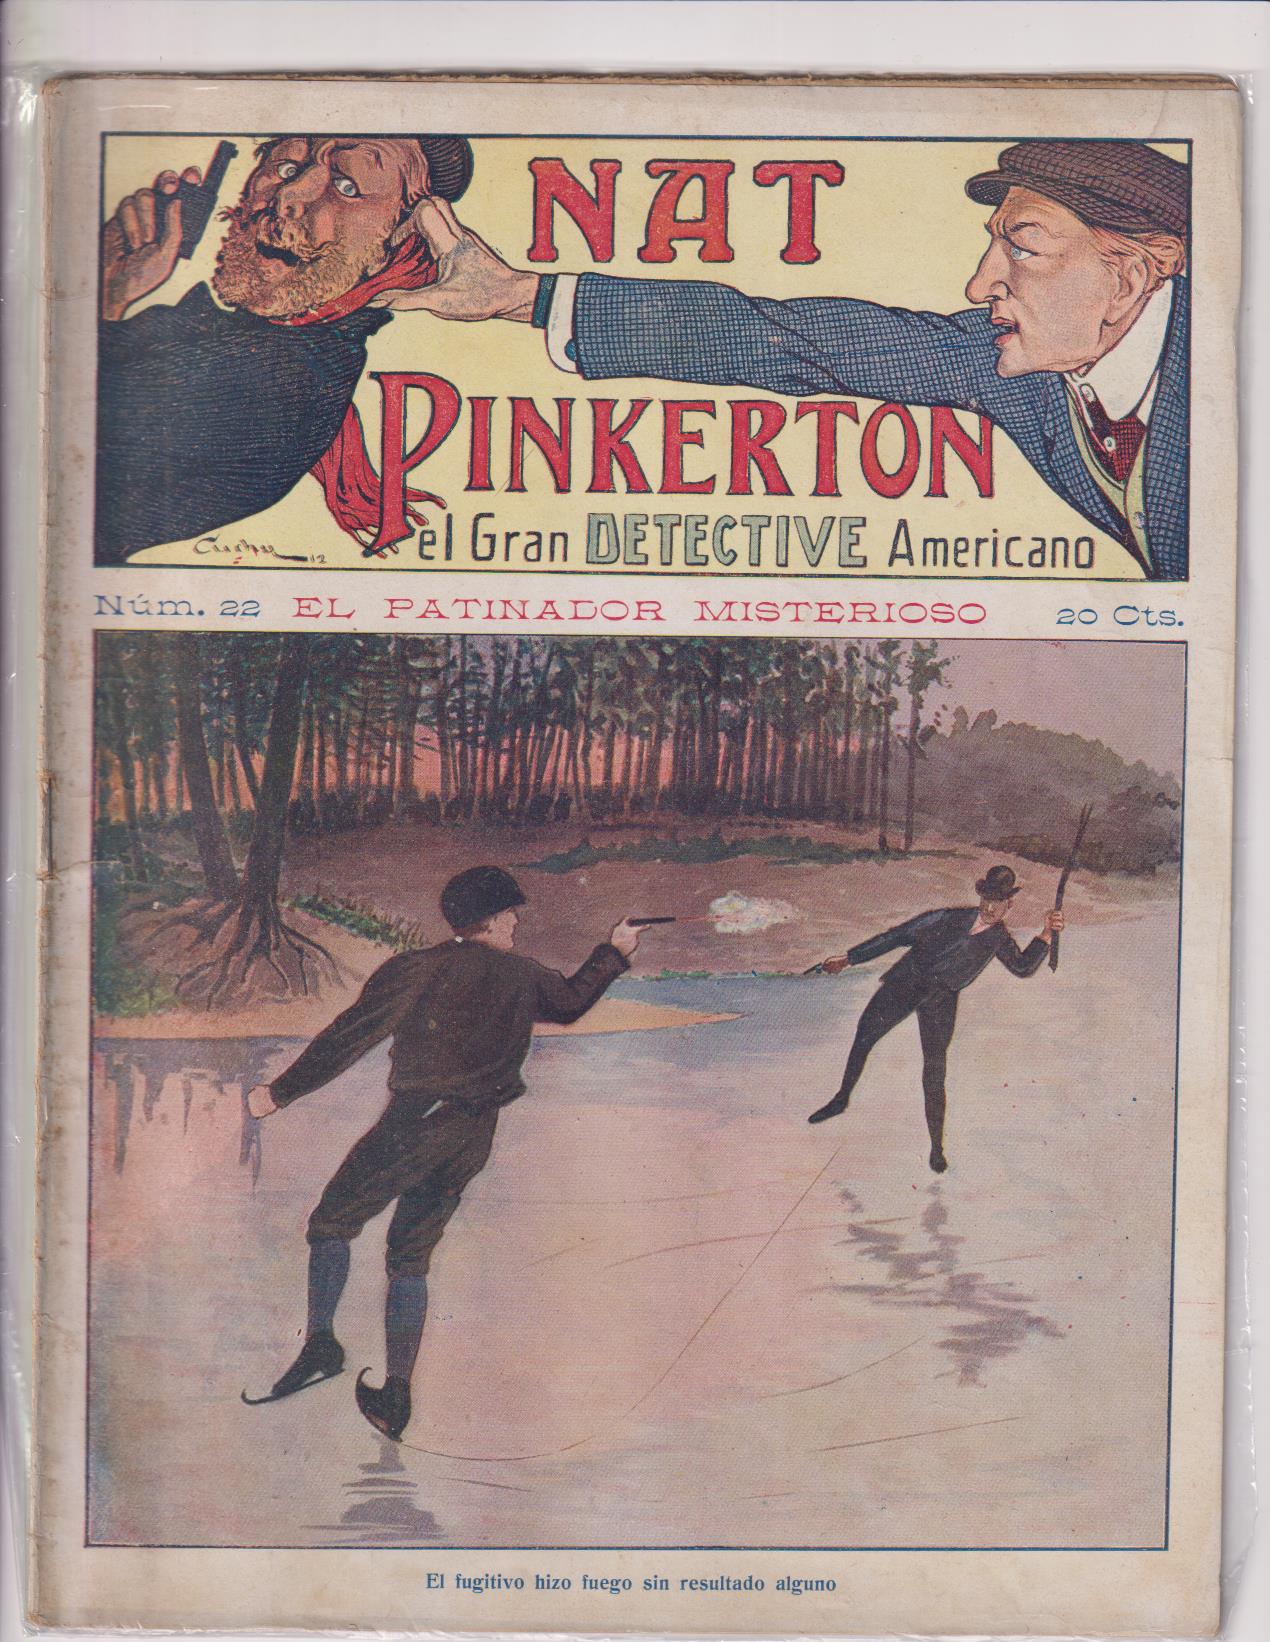 Nat Pinkerton. El Gran detective Americano nº 22. Seguí. (26x21) 31 p.p. con imágenes